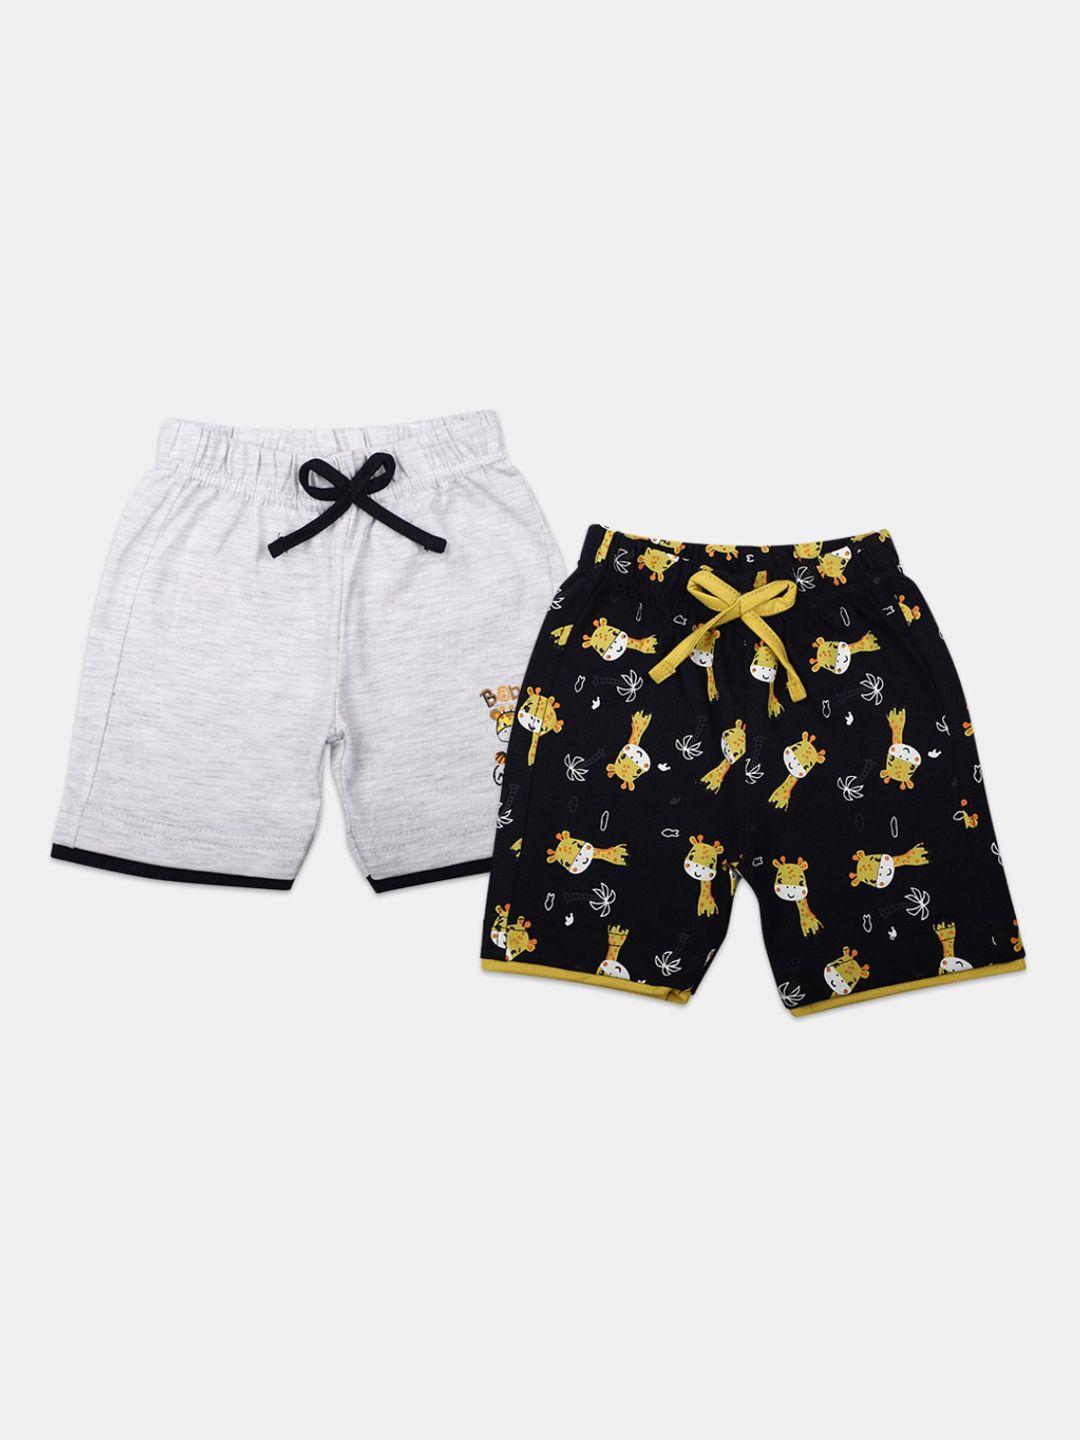 v-mart infant kids pack of 2 printed shorts